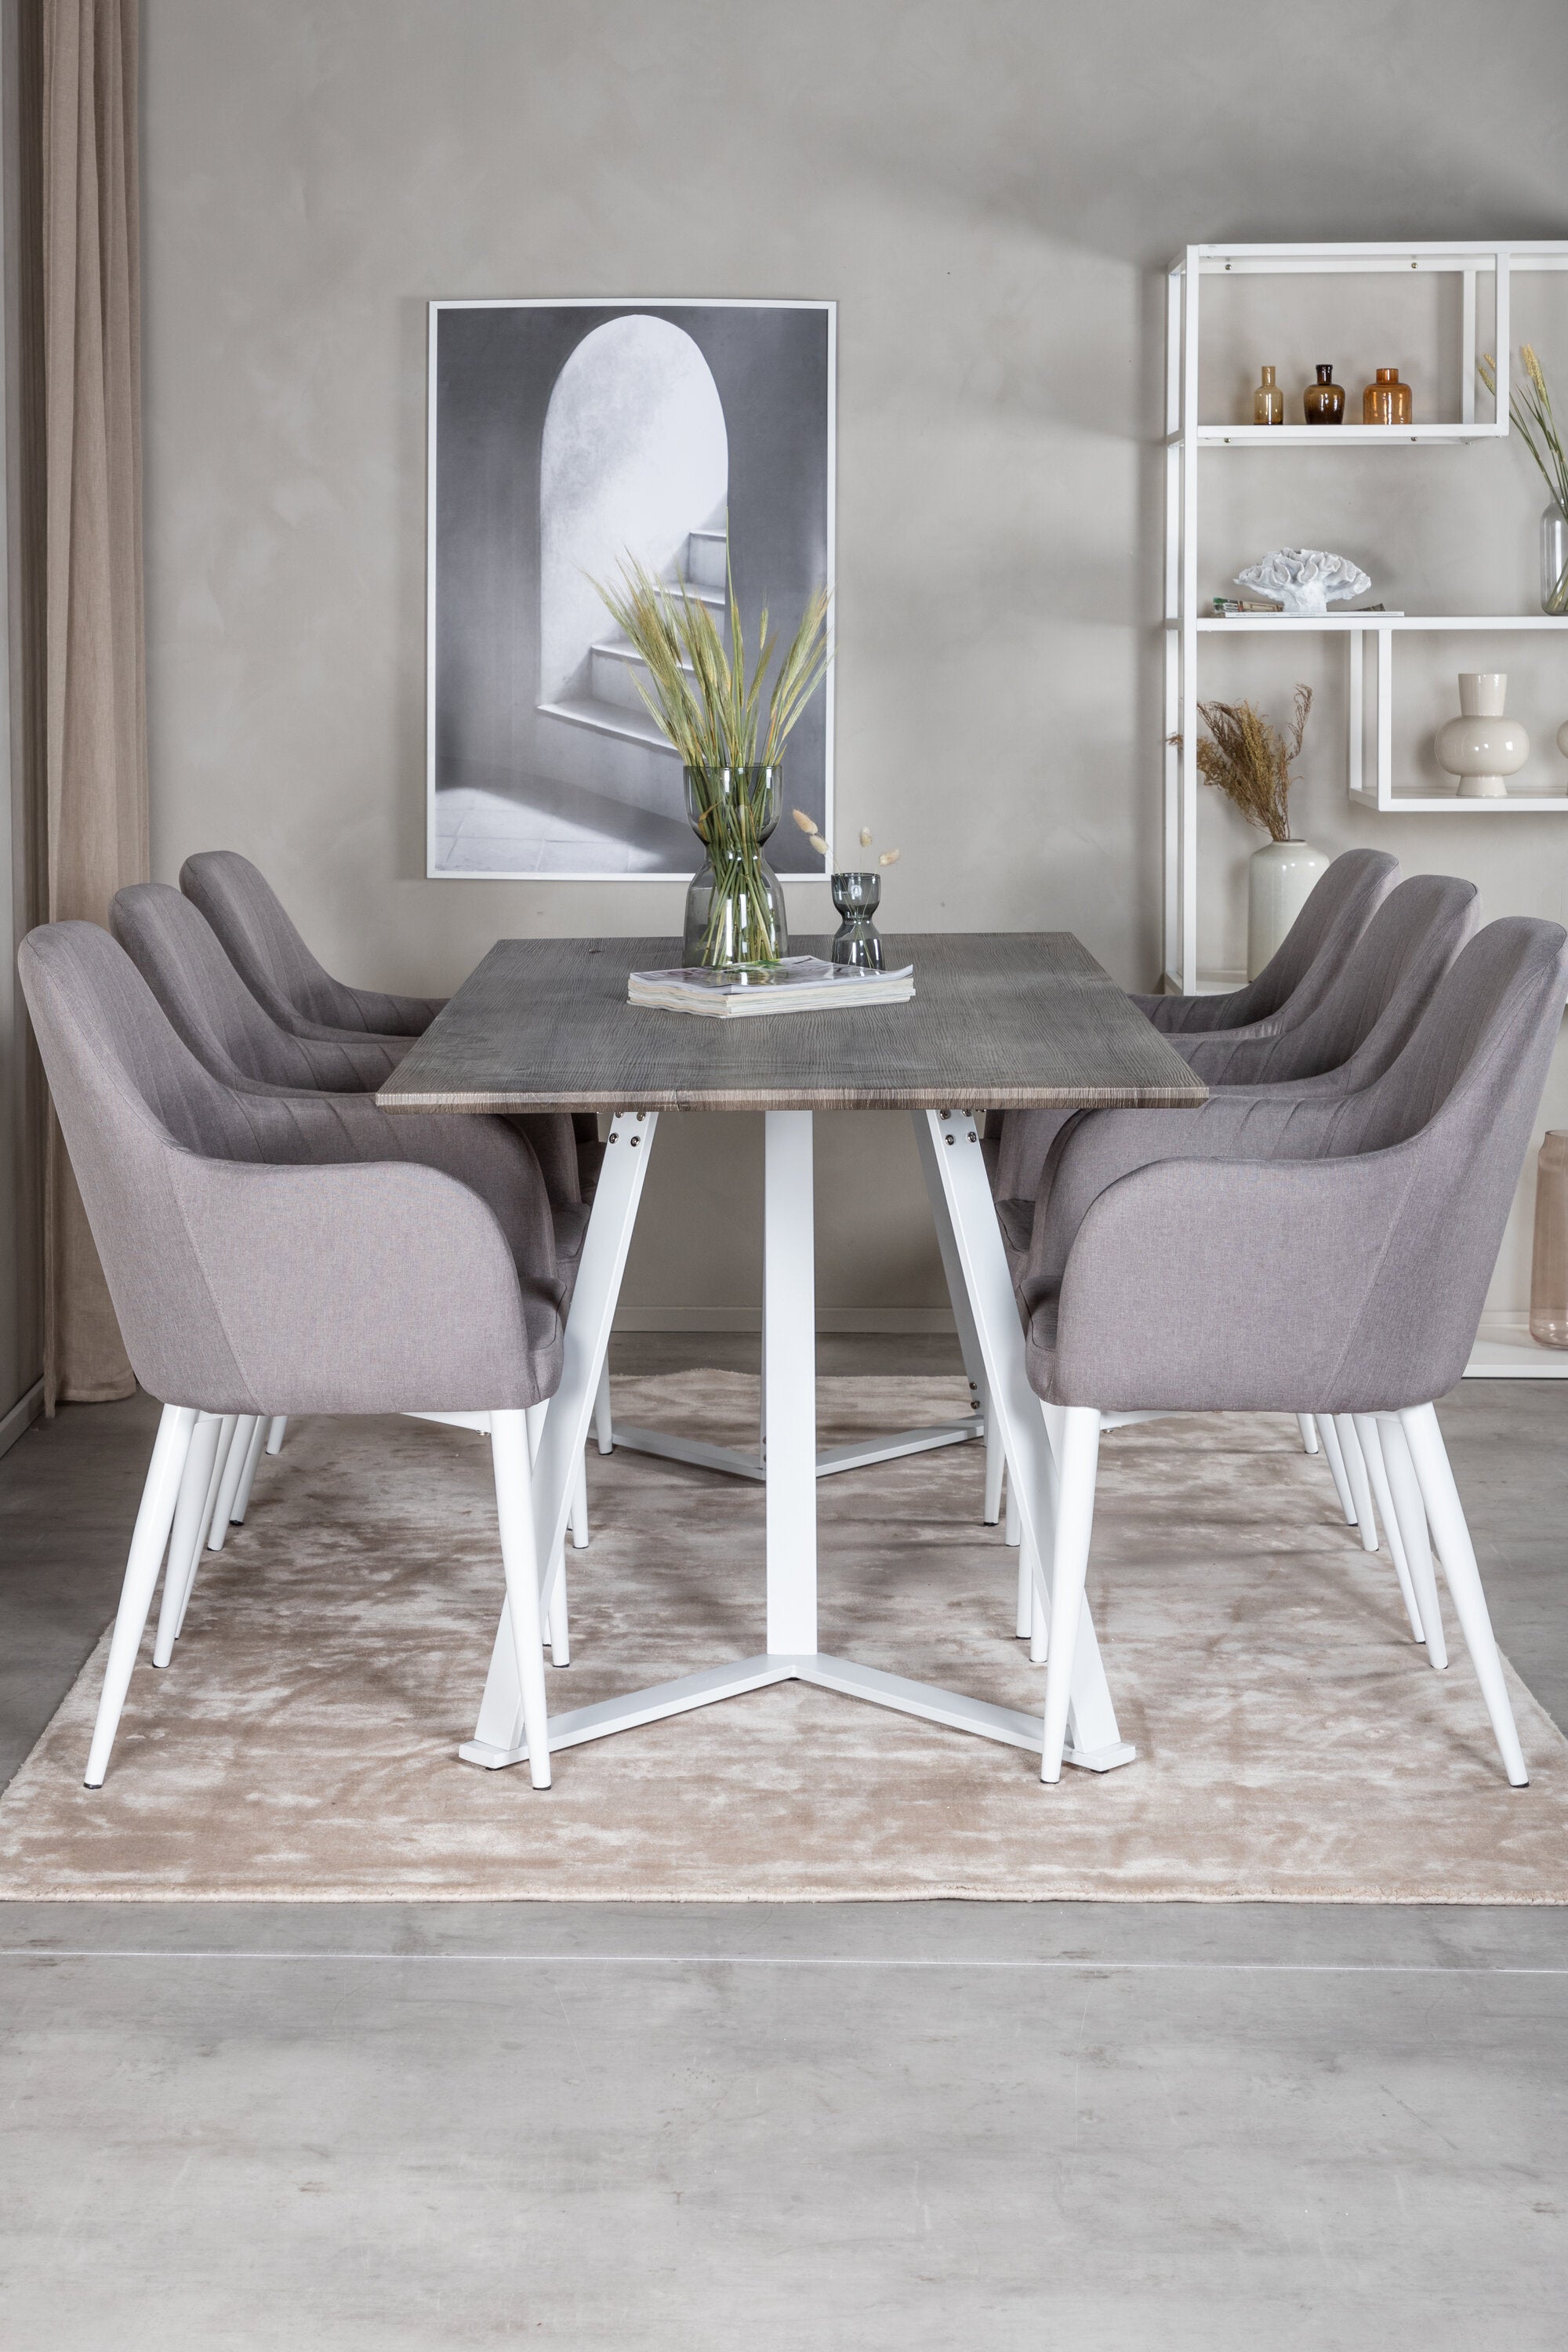 Marina Esszimmerset Comfort 180cm/6St. in Grau weiss präsentiert im Onlineshop von KAQTU Design AG. Esszimmerset ist von Venture Home